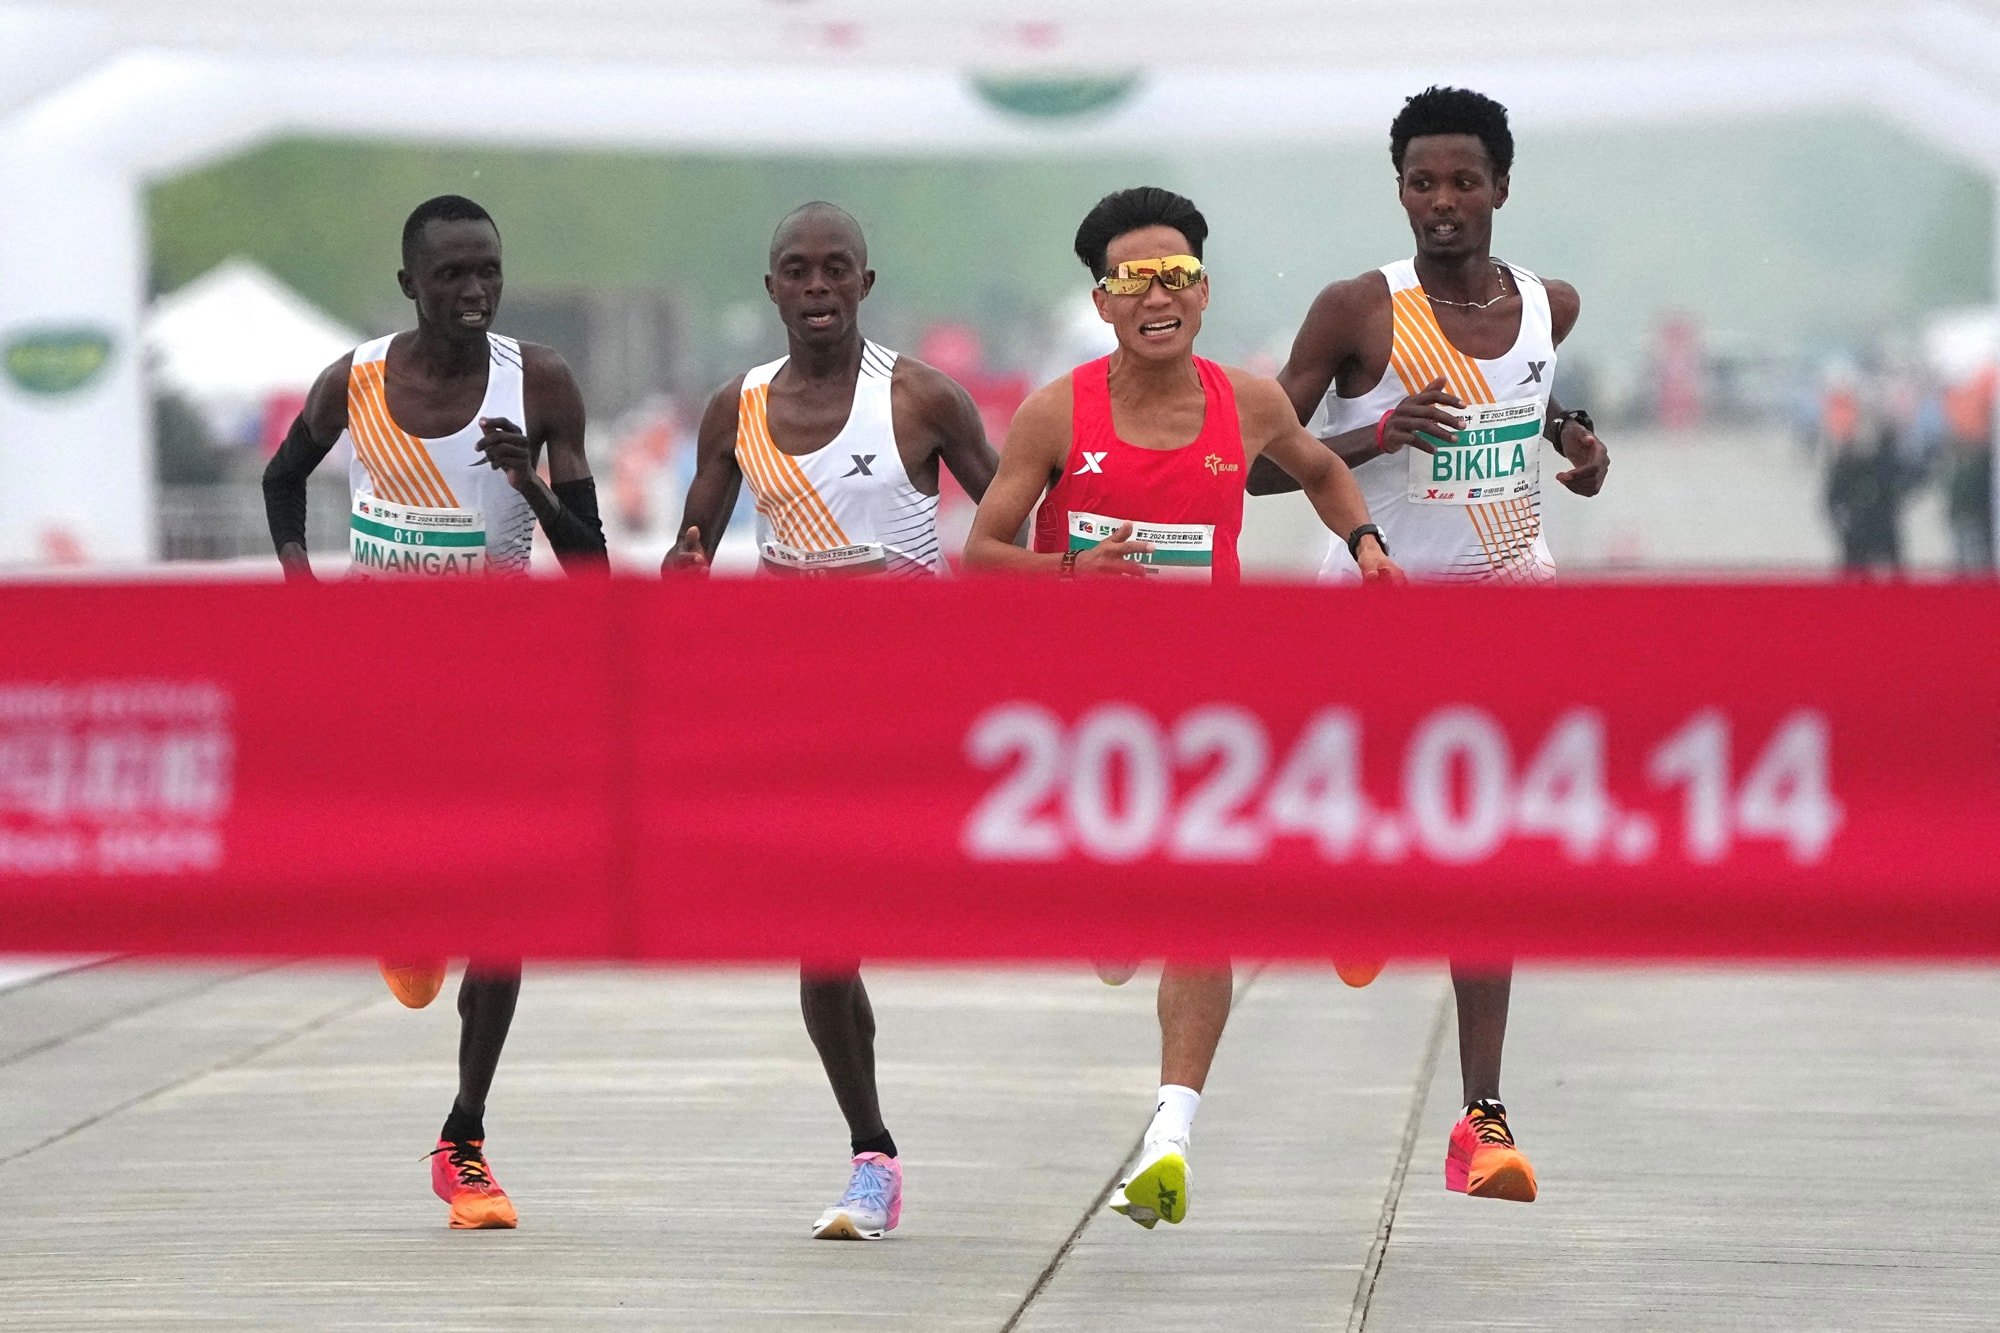 Çin'de gündem olan maraton! 'Utanç verici'